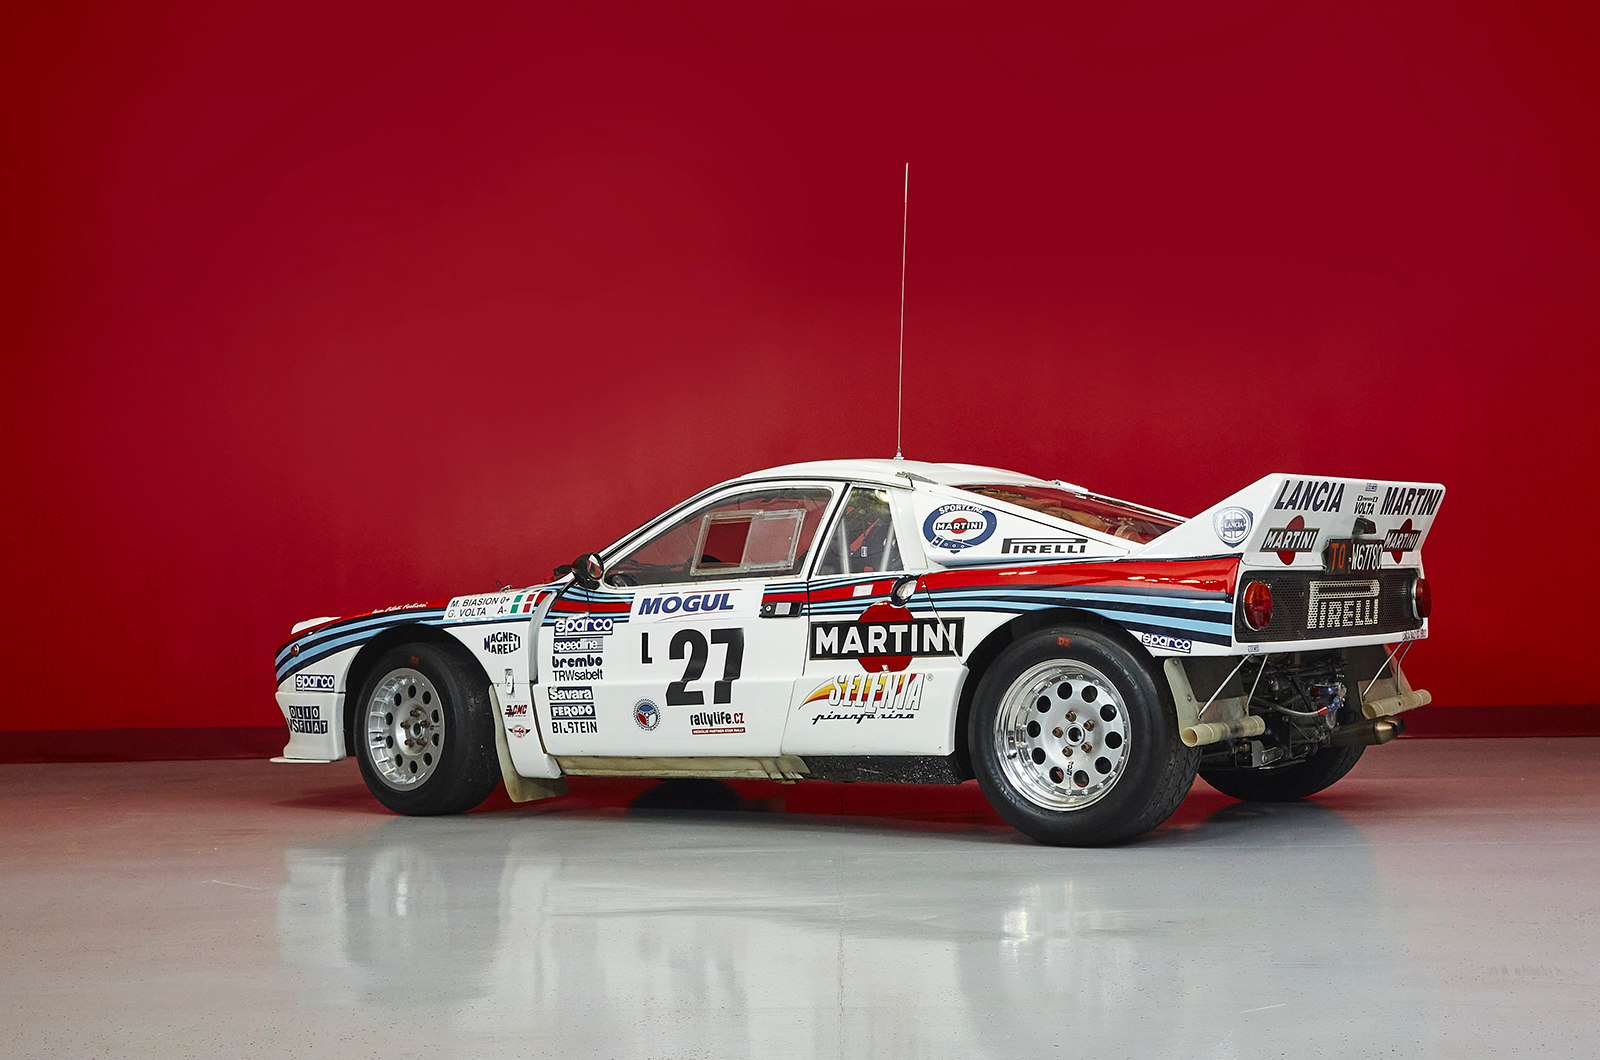 1984 Lancia 037 Rally Evo 2 Group B